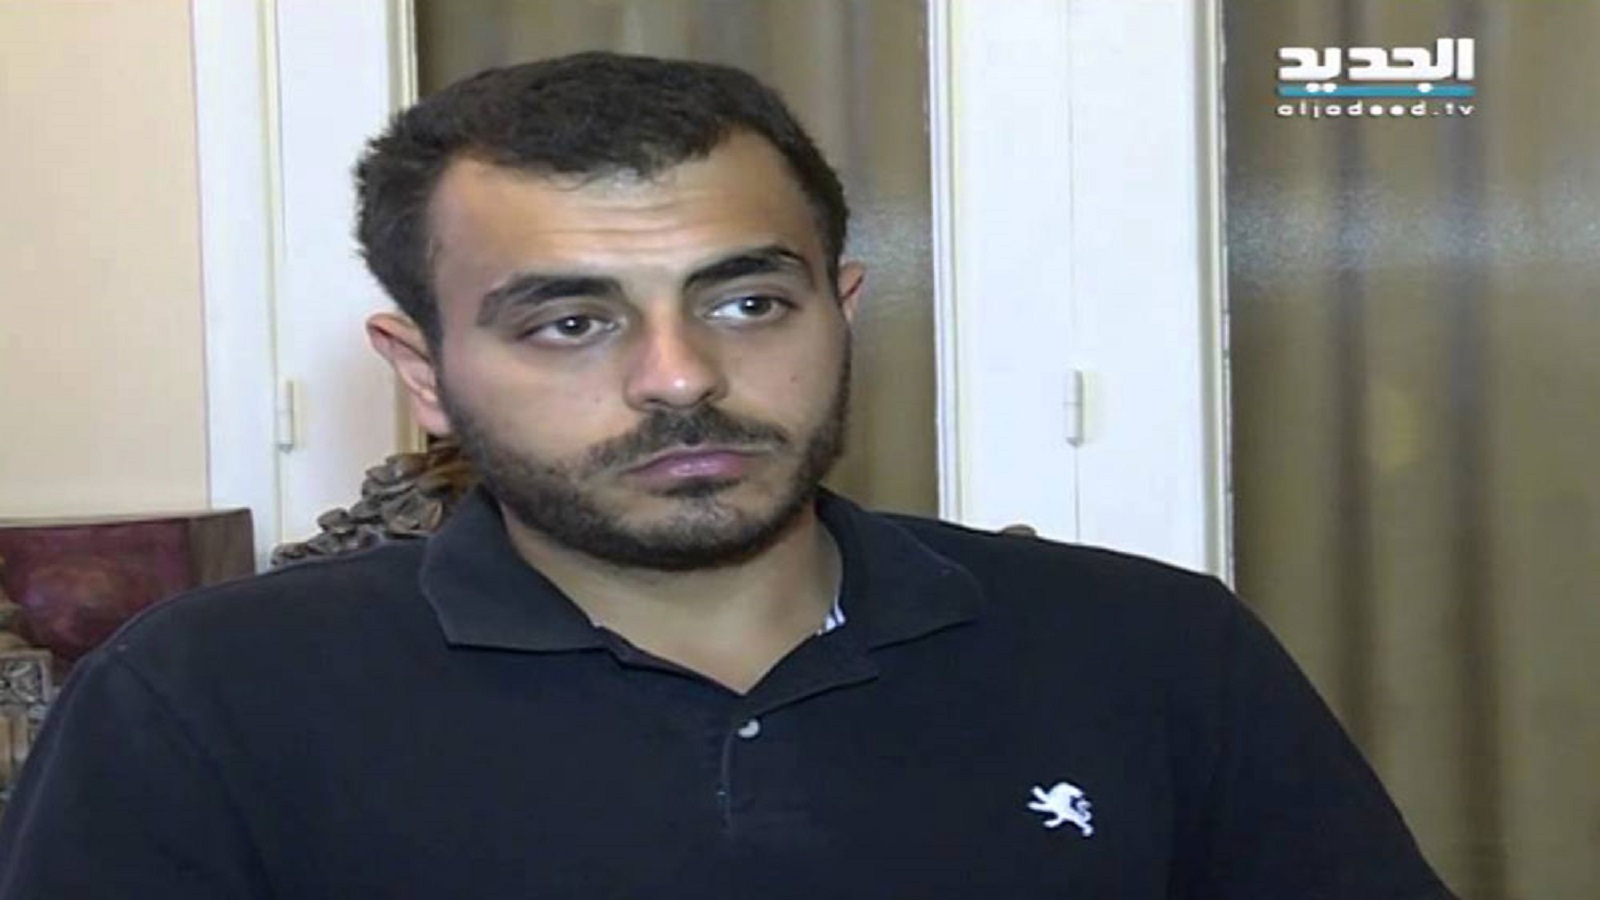 آدم شمس الدين إلى المحكمة العسكرية بتهمة"تحقير أمن الدولة"